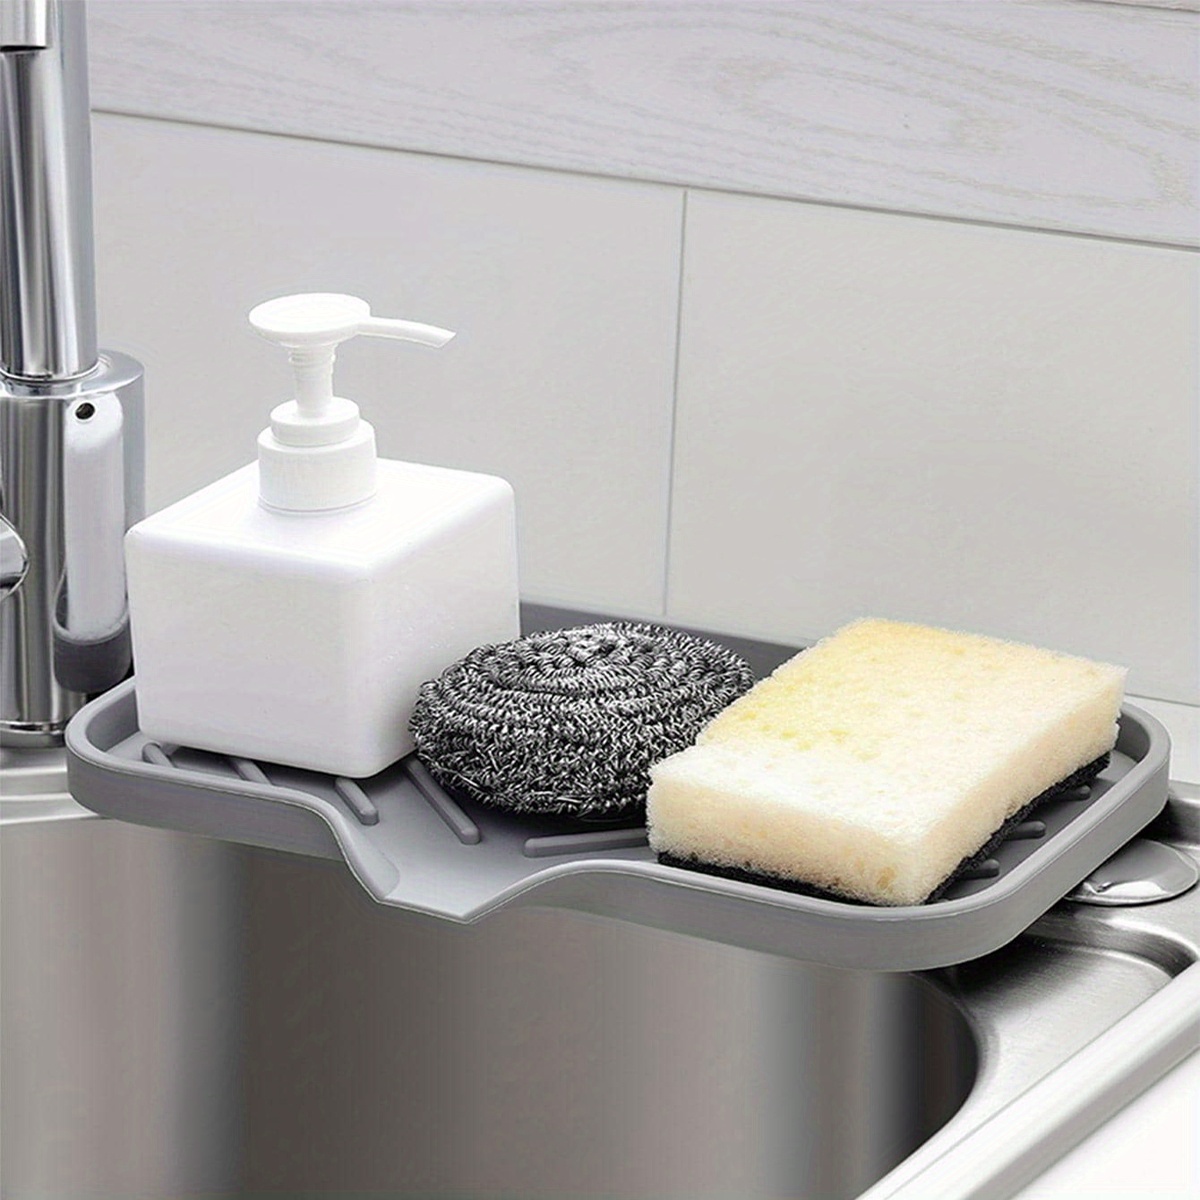 Zendure Sponges Holder - Kitchen Sink Organizer Silicone Tray for